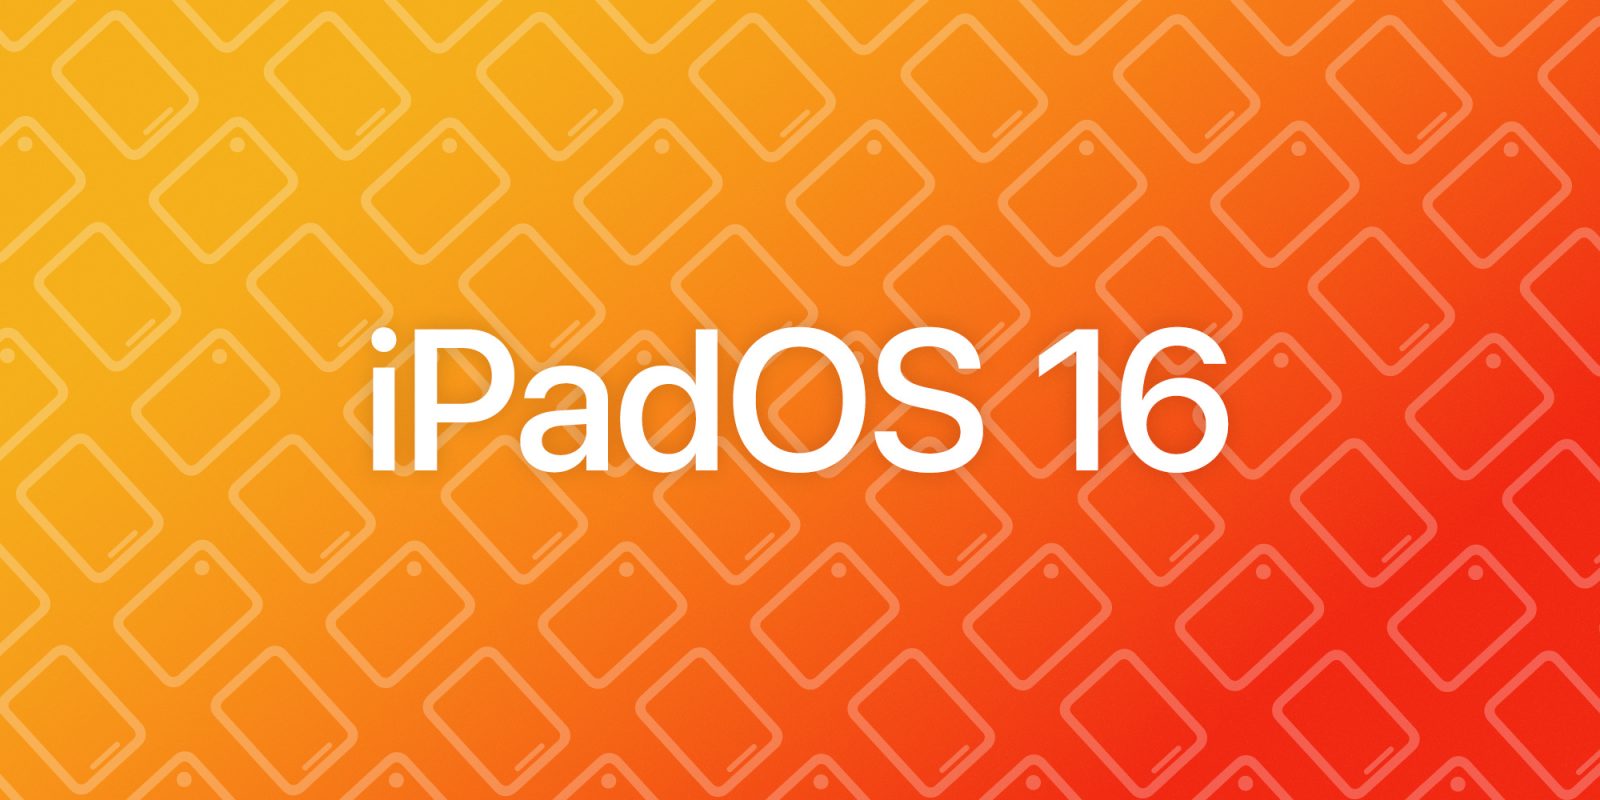 iPadOS 16